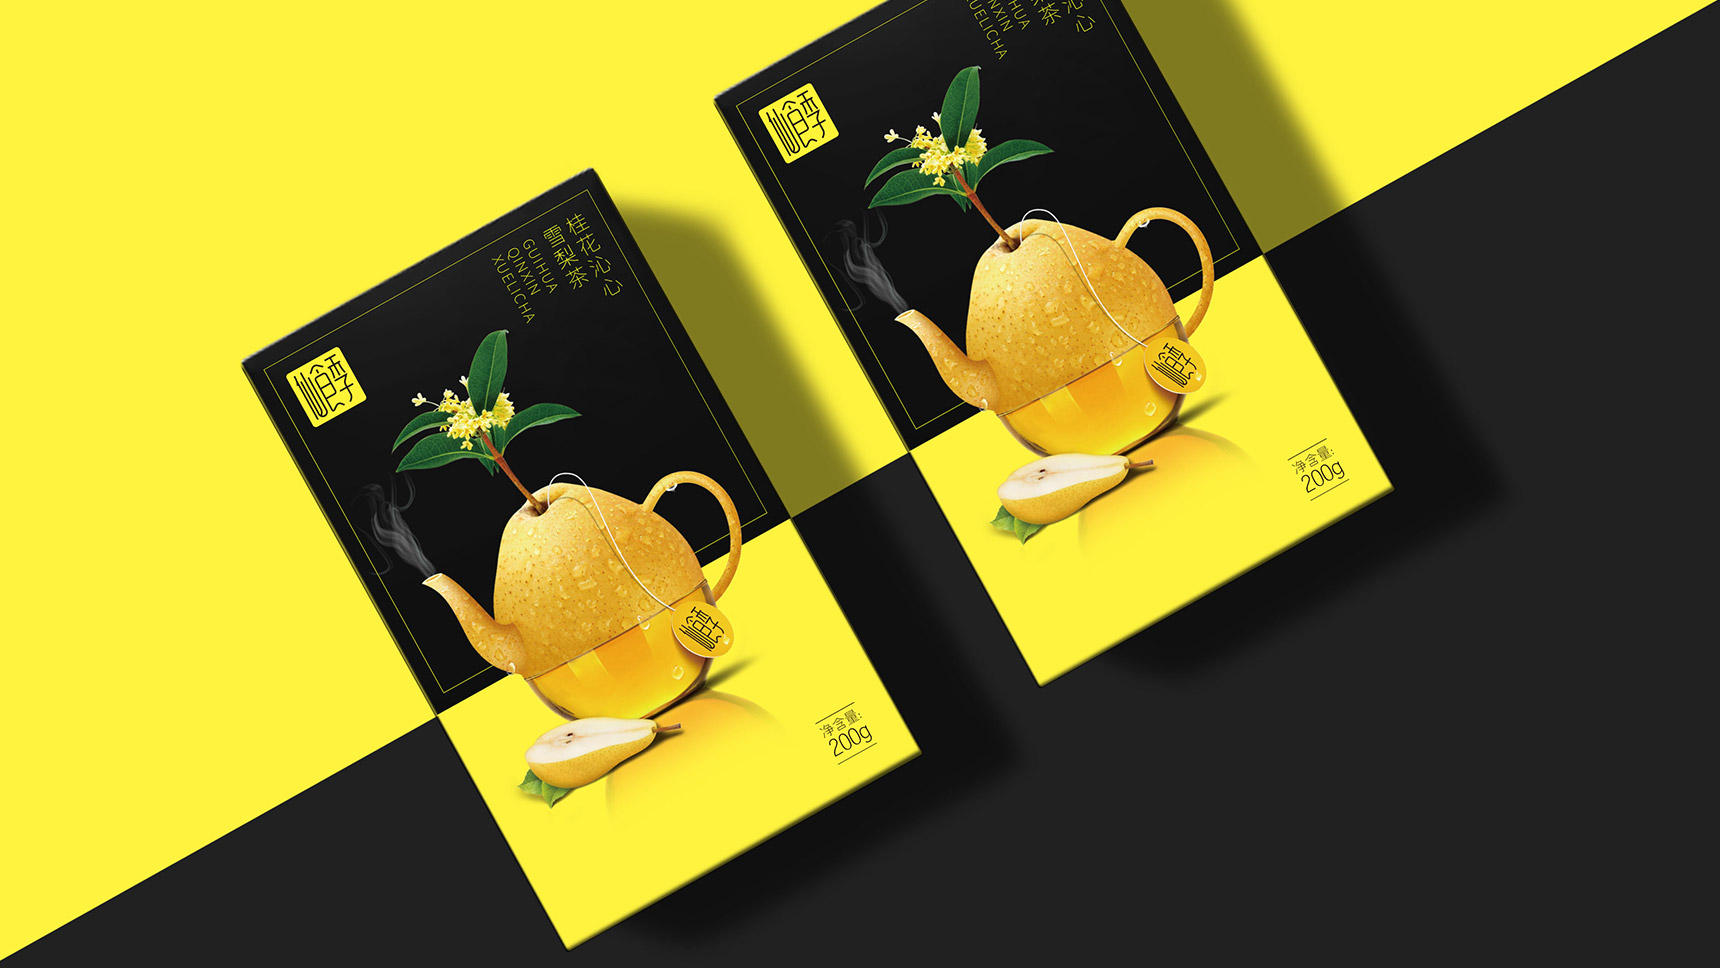 仙食季花茶包装设计 花果茶包装设计